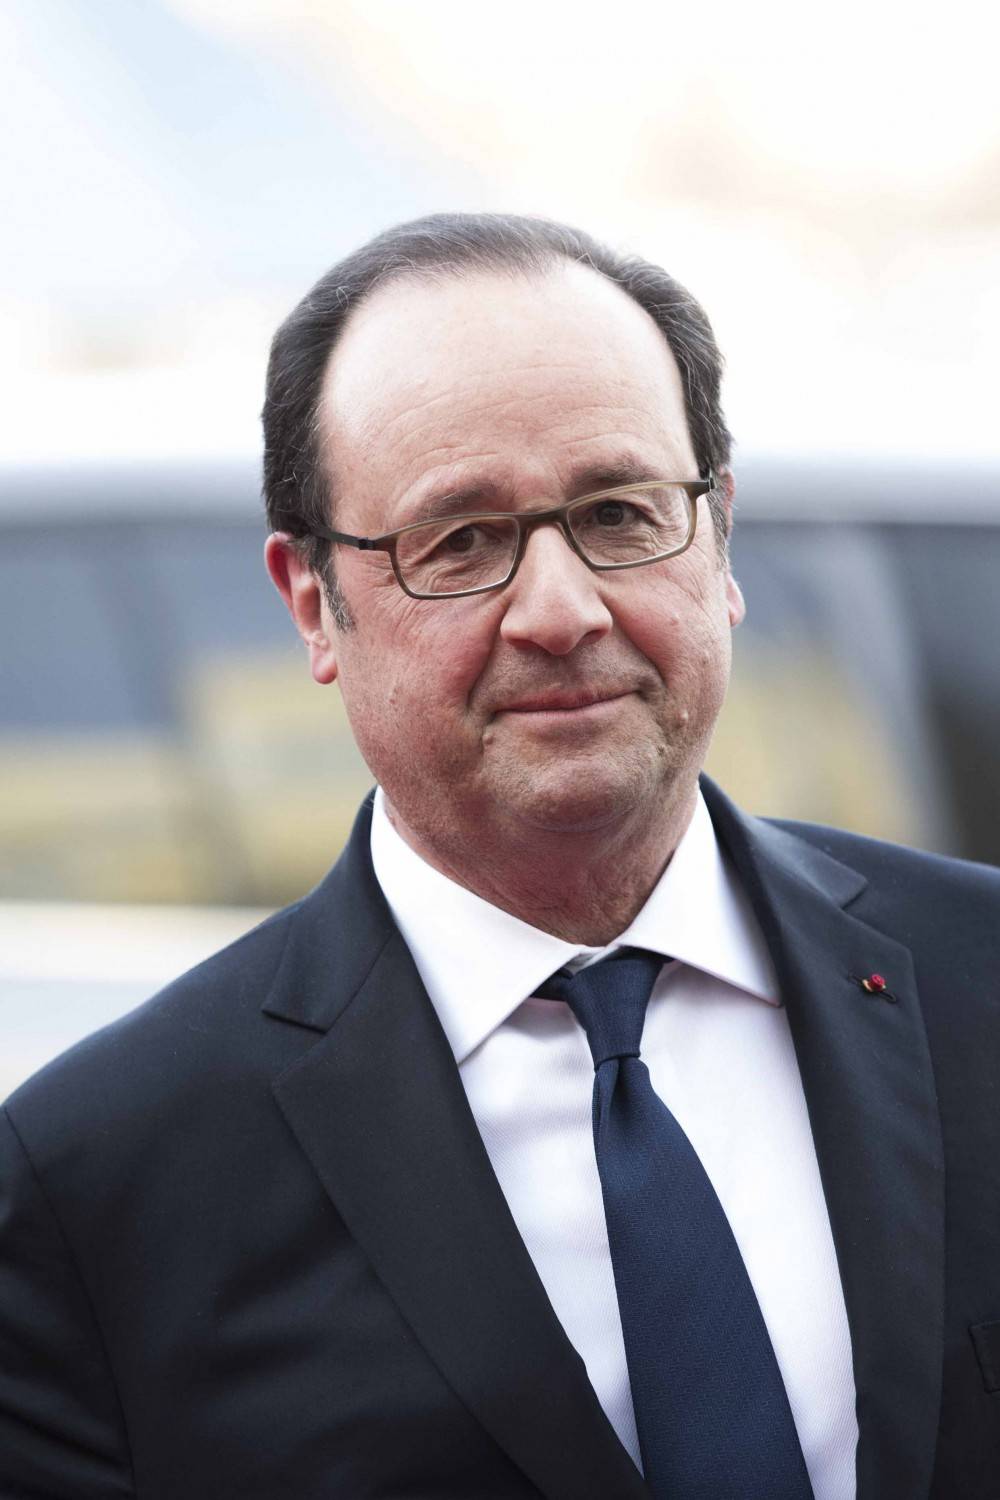 L'ultimo appello del presidente Hollande: "Attenti a Marine, non è ancora stata sconfitta"